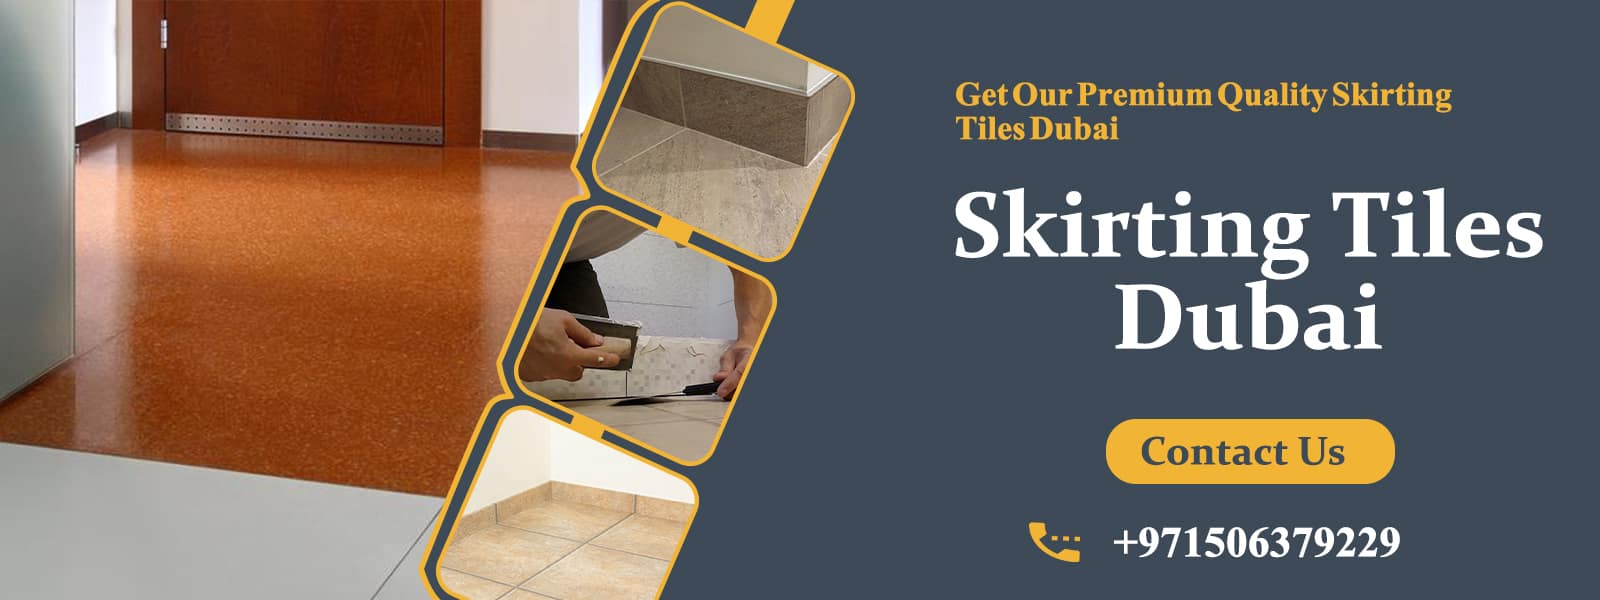 Skirting-Tiles--Dubai-Banner-2